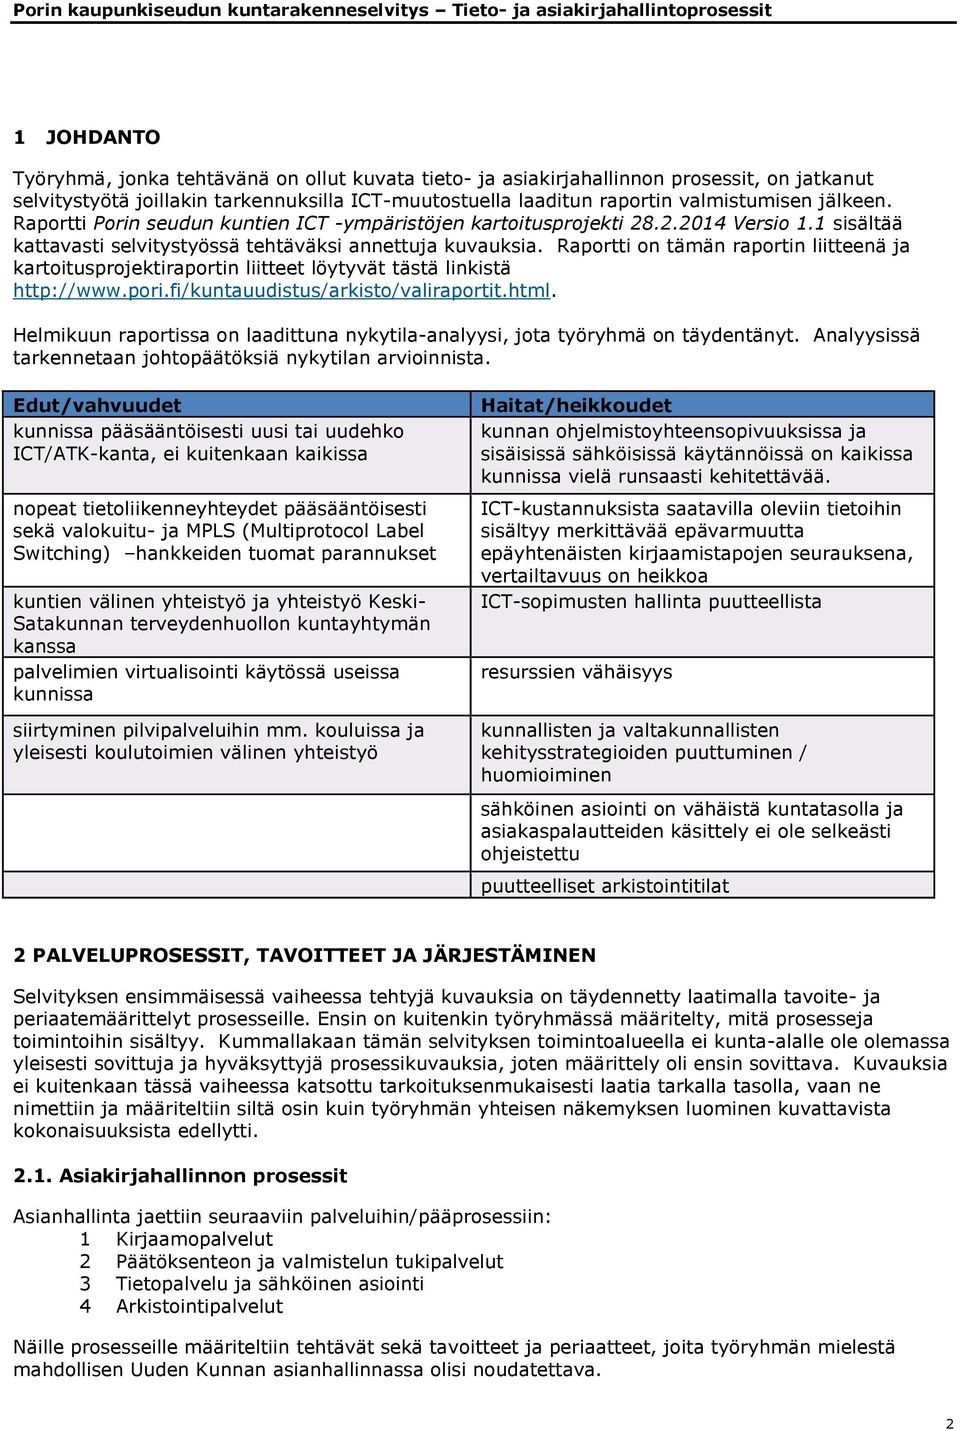 Raportti on tämän raportin liitteenä ja kartoitusprojektiraportin liitteet löytyvät tästä linkistä http://www.pori.fi/kuntauudistus/arkisto/valiraportit.html.